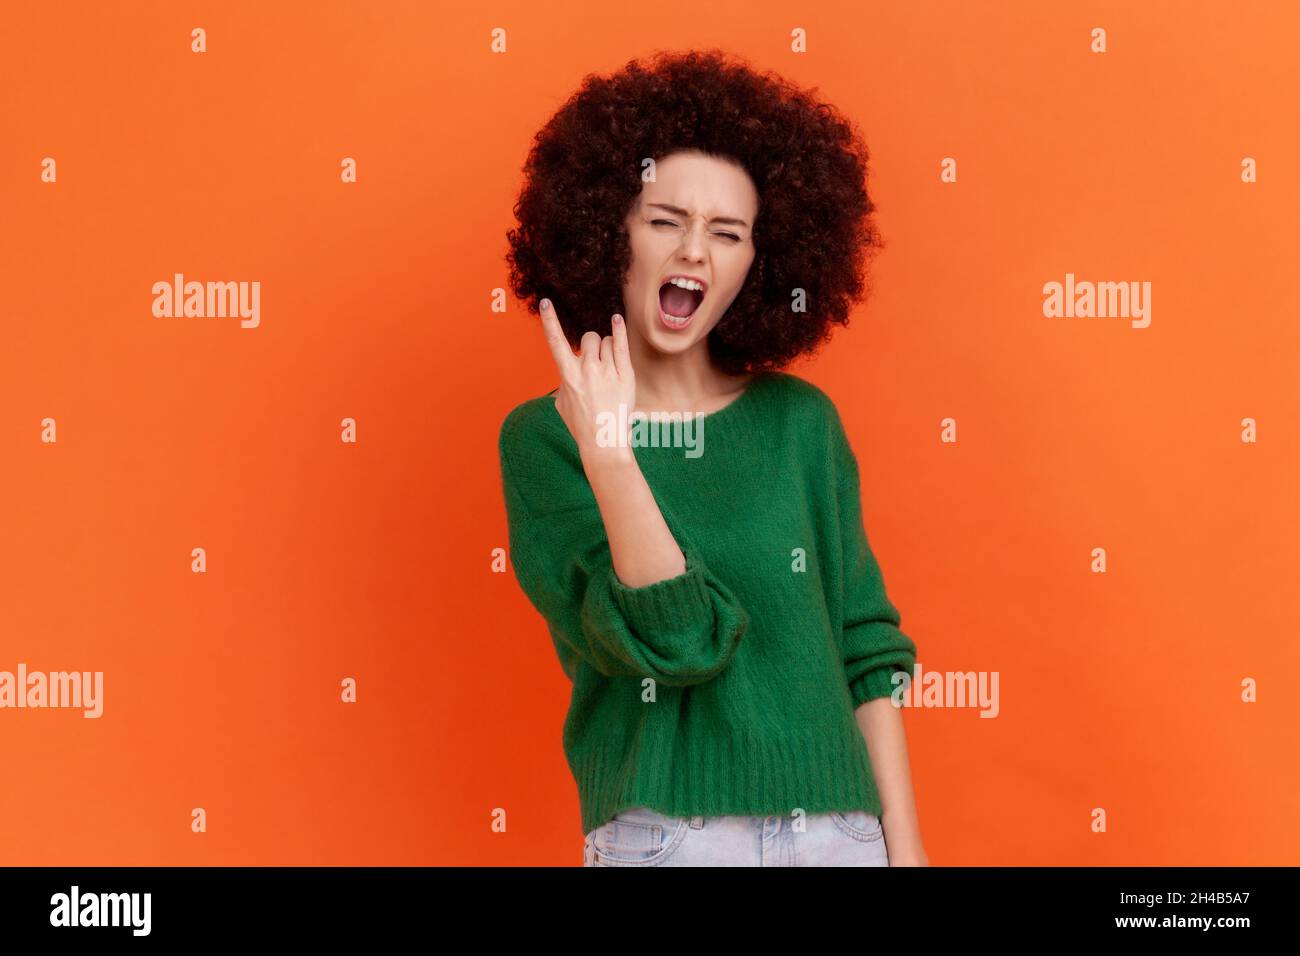 Aufgeregt enthusiastische Frau mit Afro-Frisur trägt grünen lässigen Stil Pullover mit Rock and Roll Geste. Schreiend begeistert, Indoor Studio Schuss isoliert auf orangefarbenem Hintergrund. Stockfoto